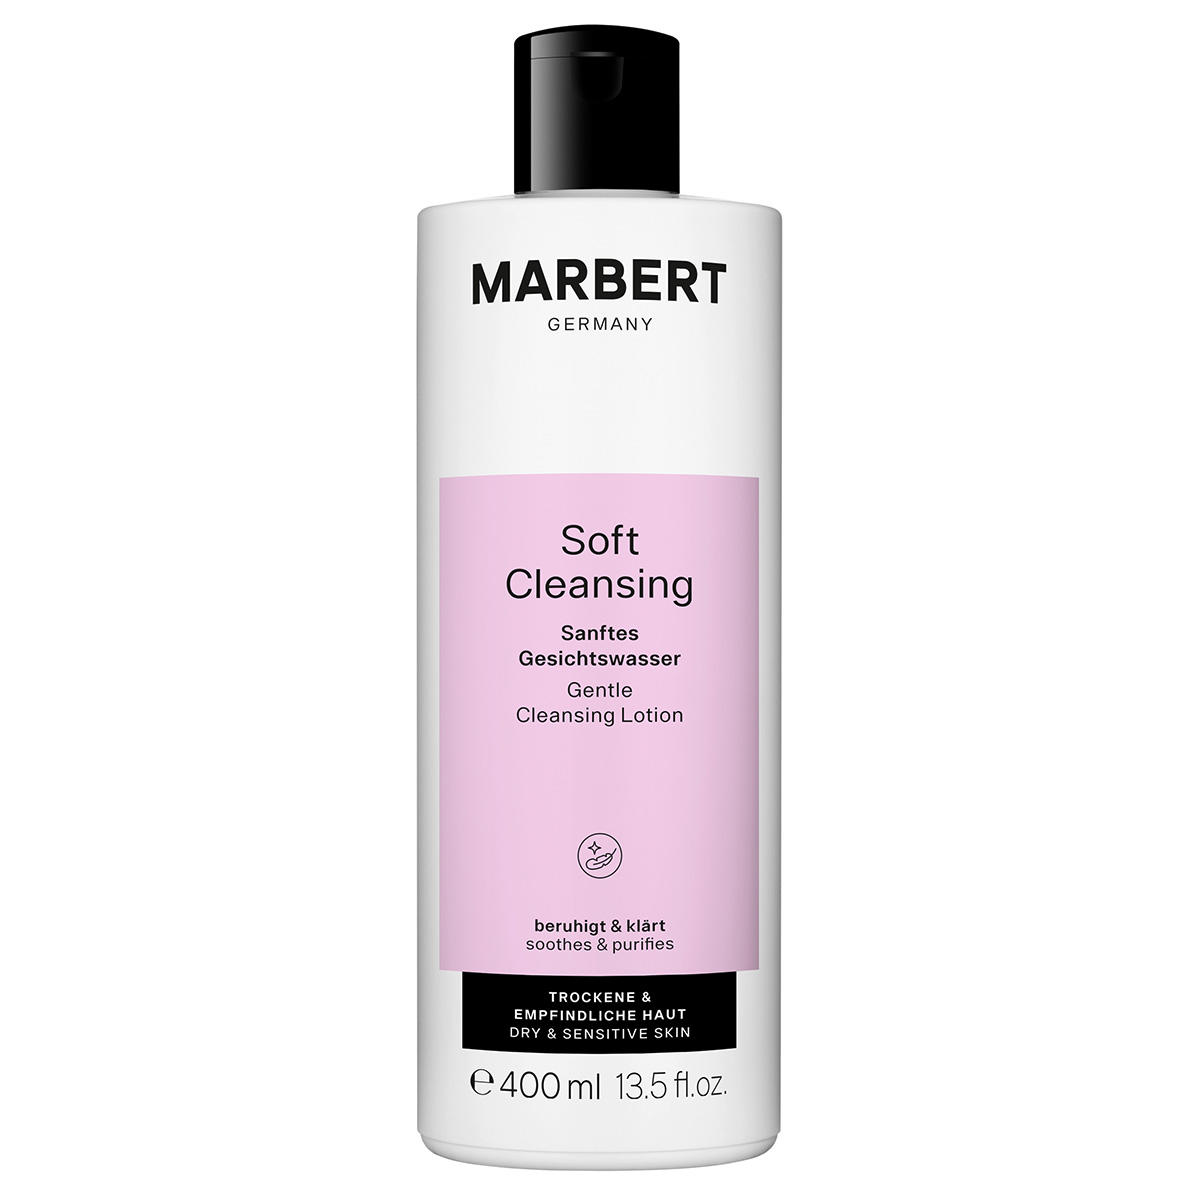 Marbert Soft Cleansing Sanftes Gesichtswasser 400 ml - 1